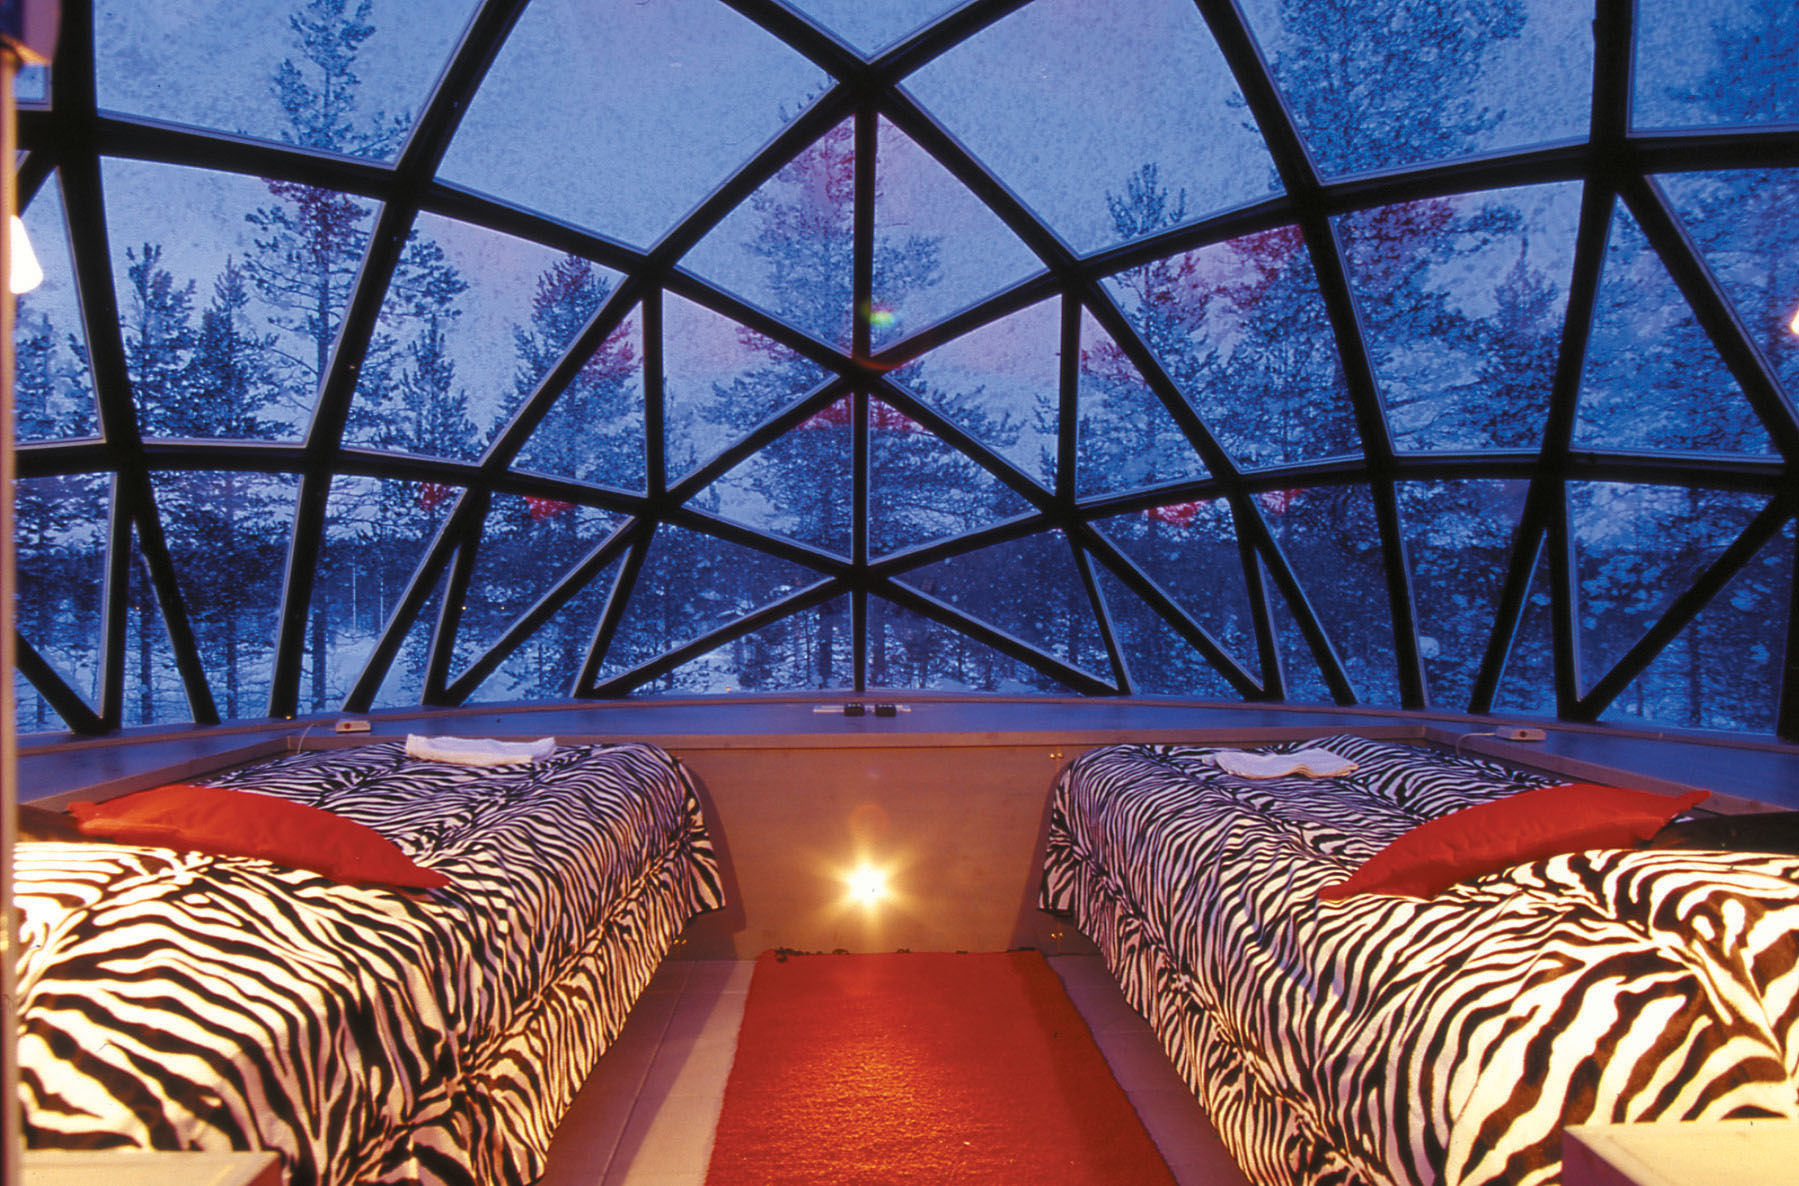 Ein Glasiglu von inen, mit zwei großen Betten mit Tigerdecke darüber und Aussicht in den Wald.